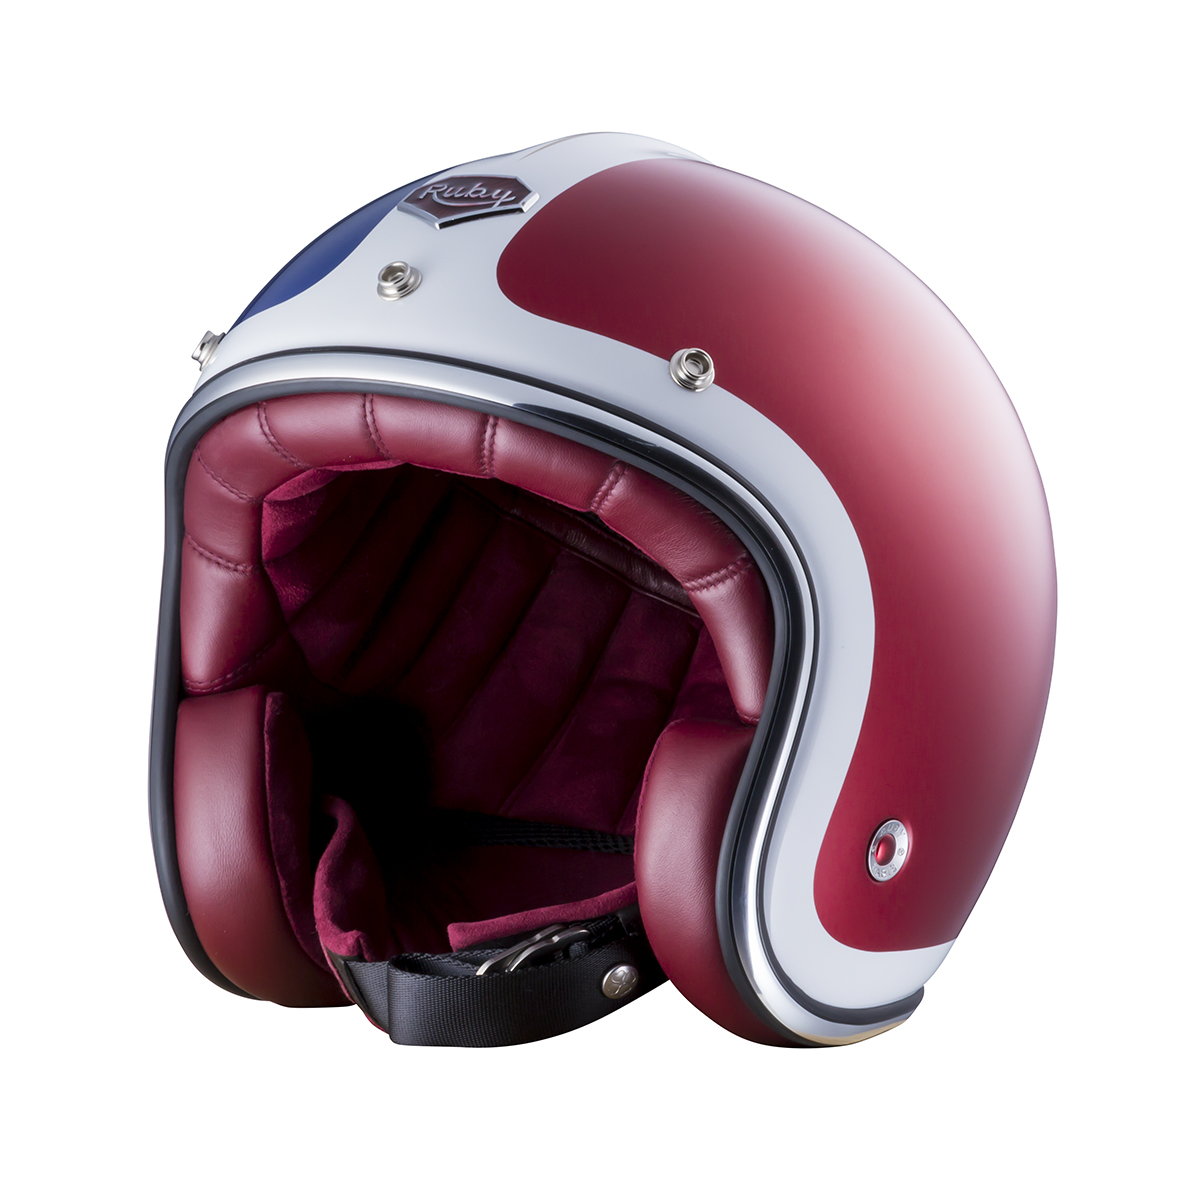 RUBYヘルメットに “15”の新色が加わりました | Motorimoda